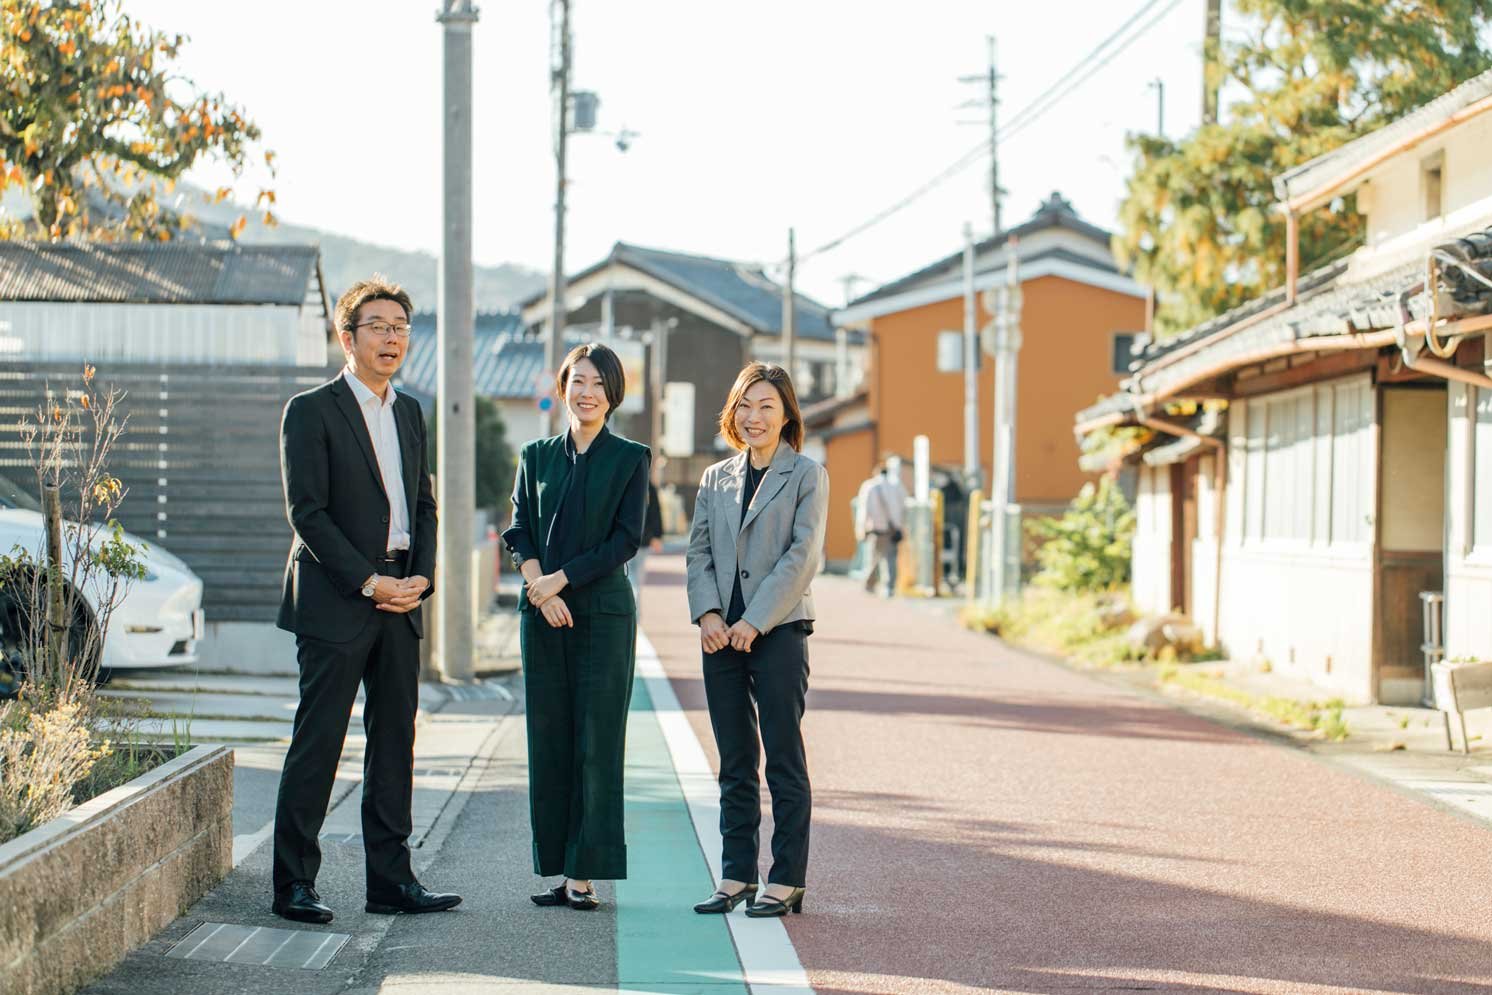 左から田村さん、武村さん、後藤さん | Make New Magazine「未来の定番」をつくるために、パナソニックのリアルな姿を伝えるメディア